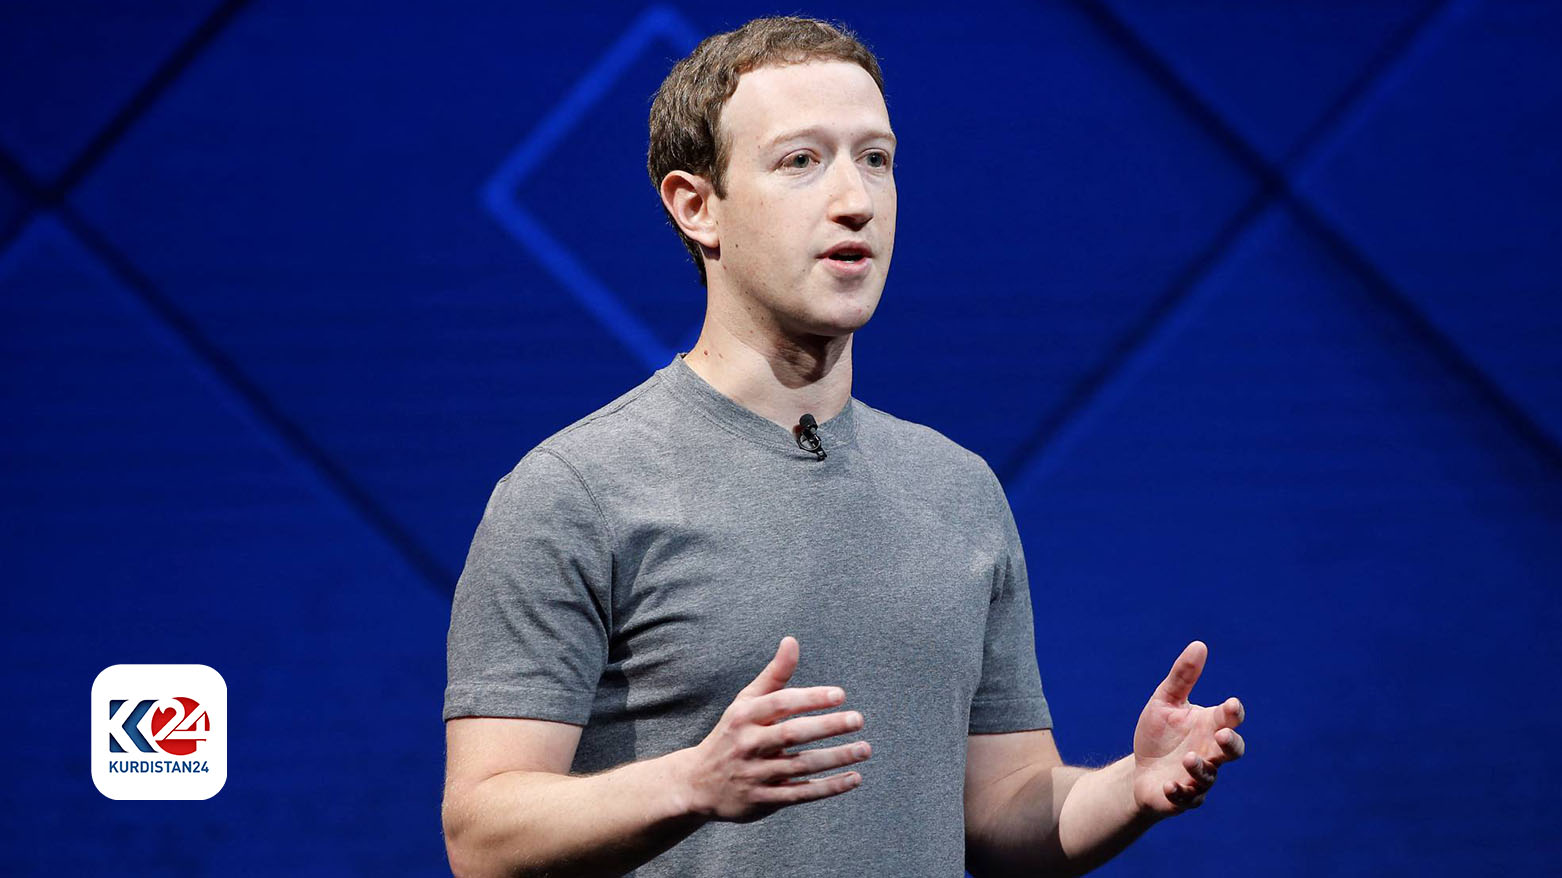 كم يبلغ دخل مارك زوكربيرغ مؤسس فيسبوك في الثانية الواحدة؟